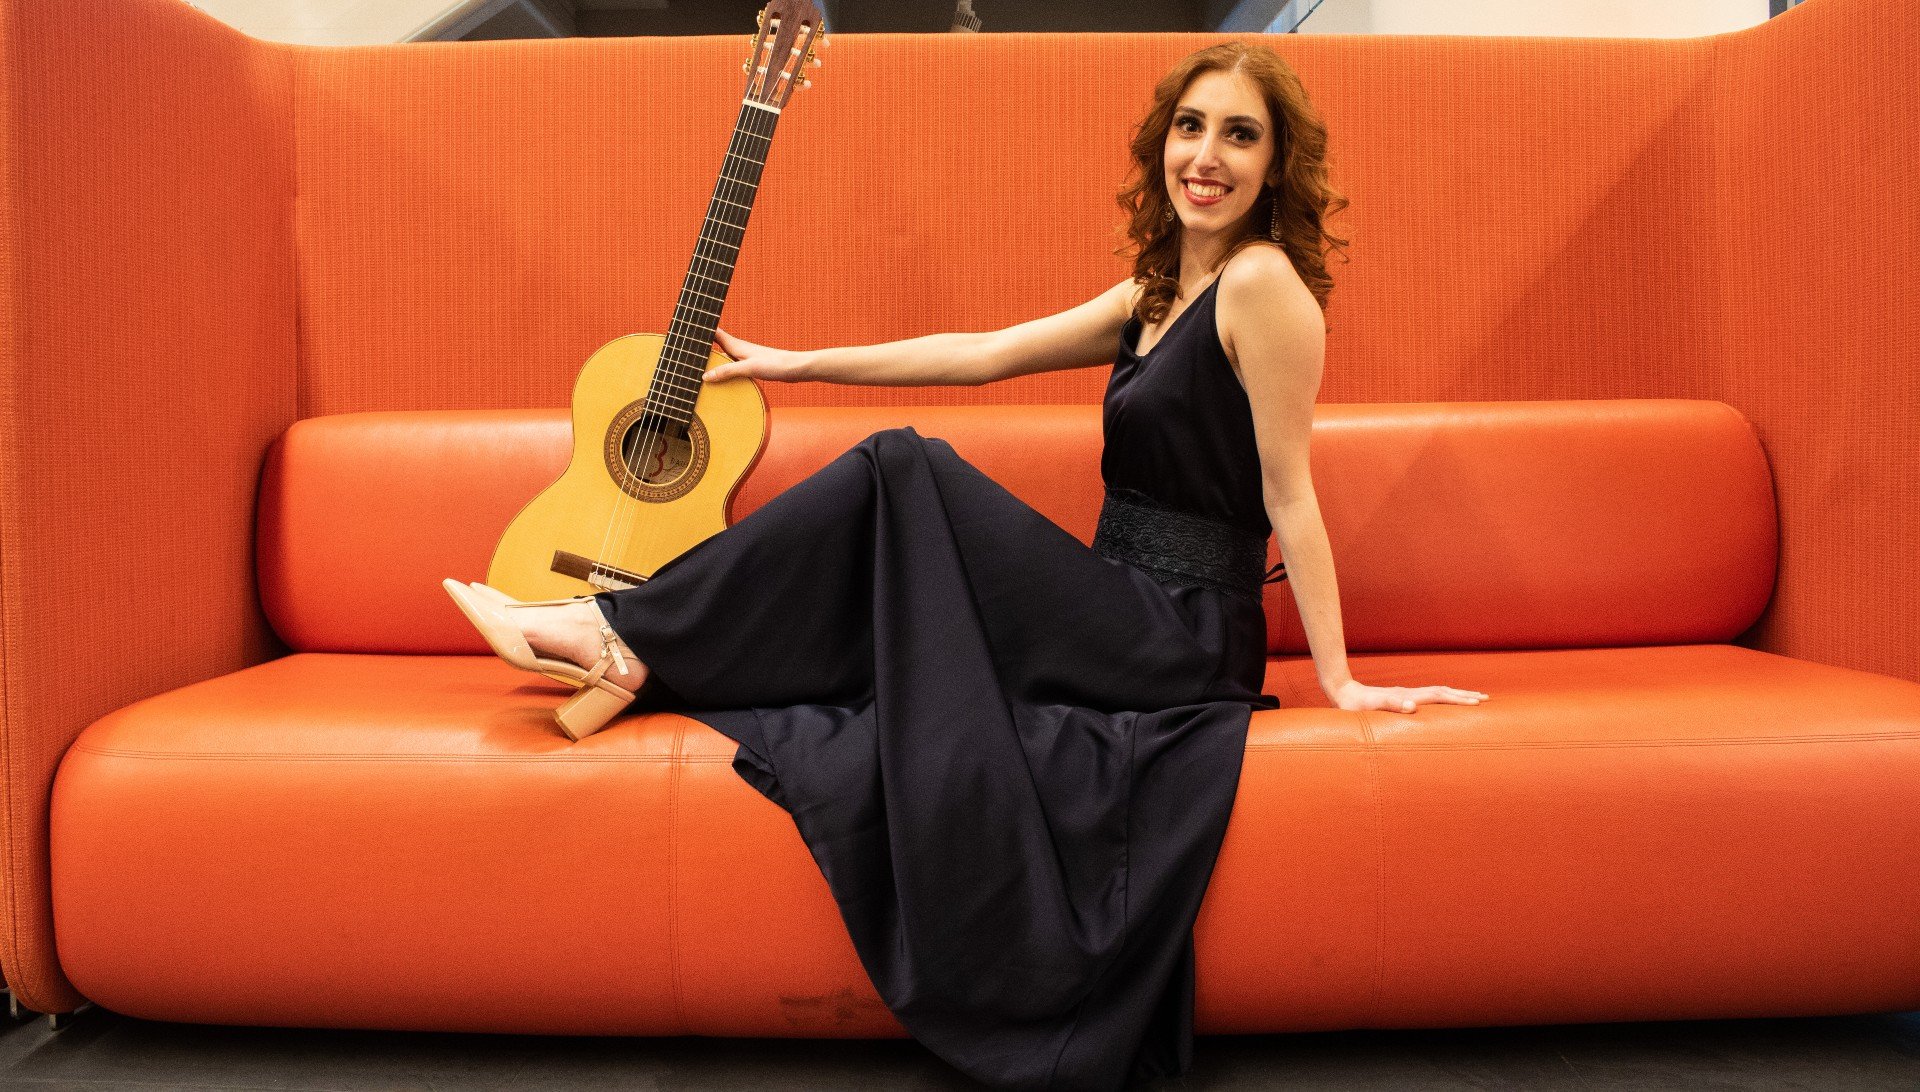 Violonista Marisa Sardo apresenta recital gratuito no CTJ Hall